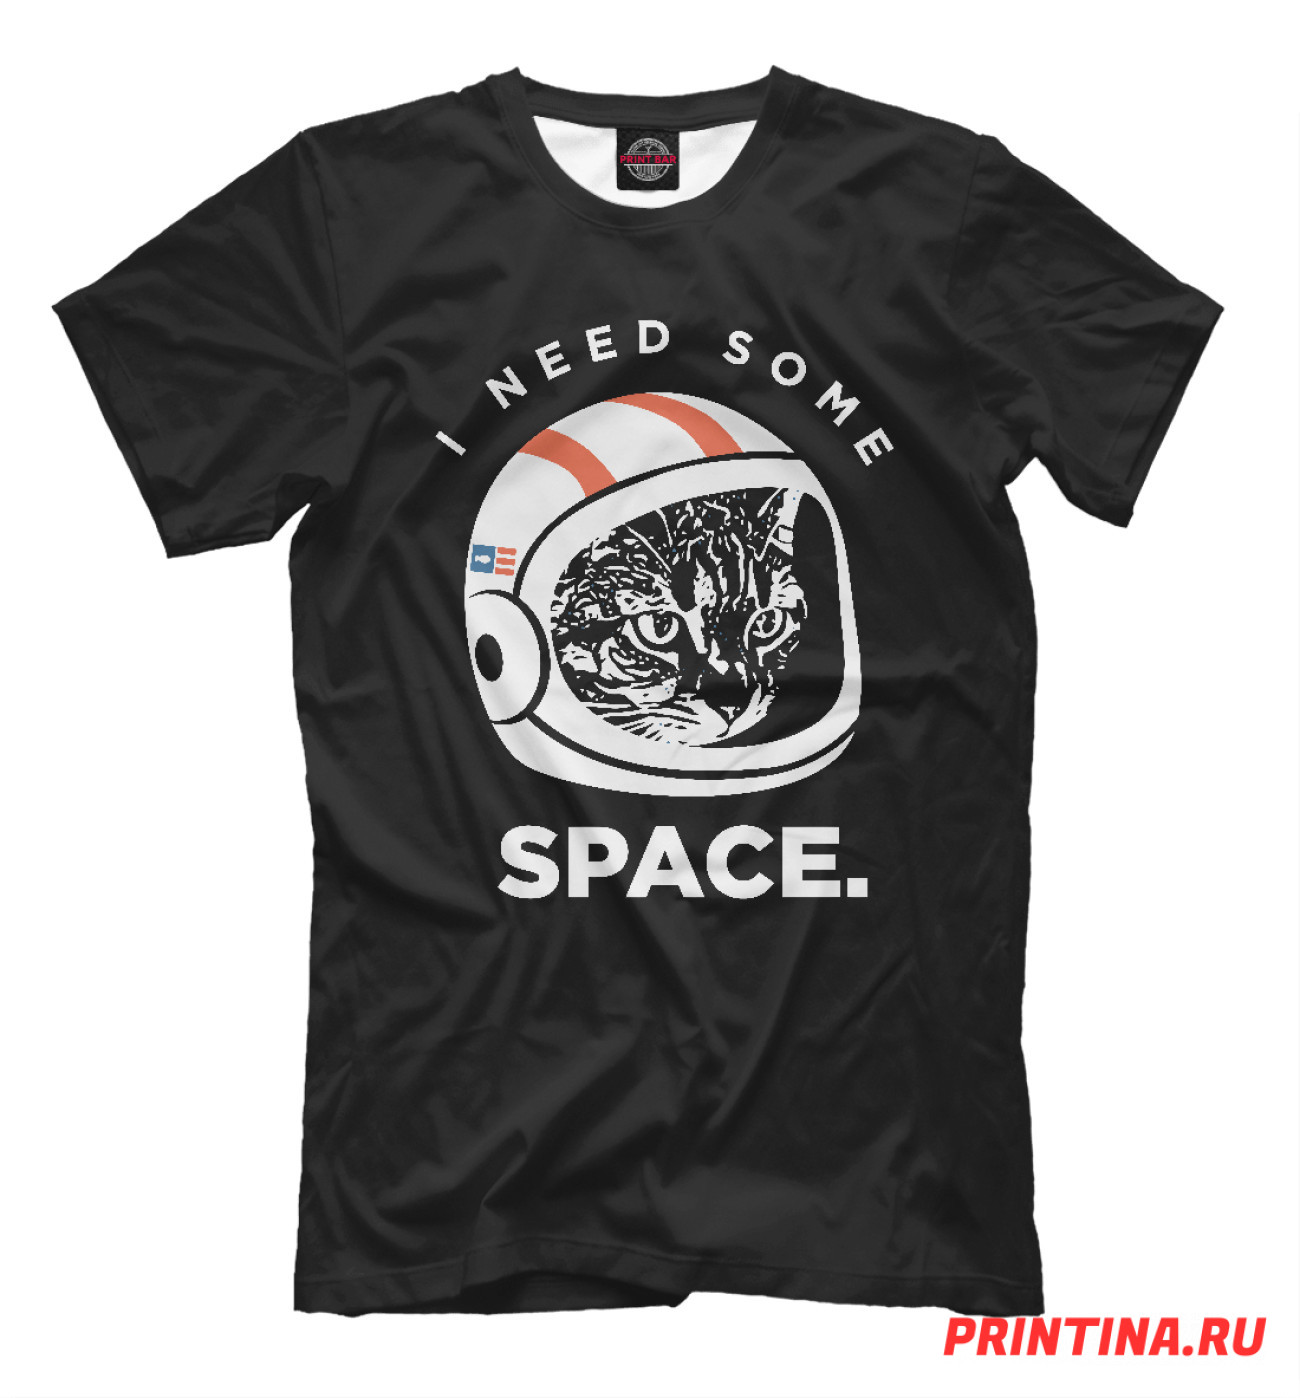 Мужская Футболка Need Some Space, артикул: CIS-442391-fut-2